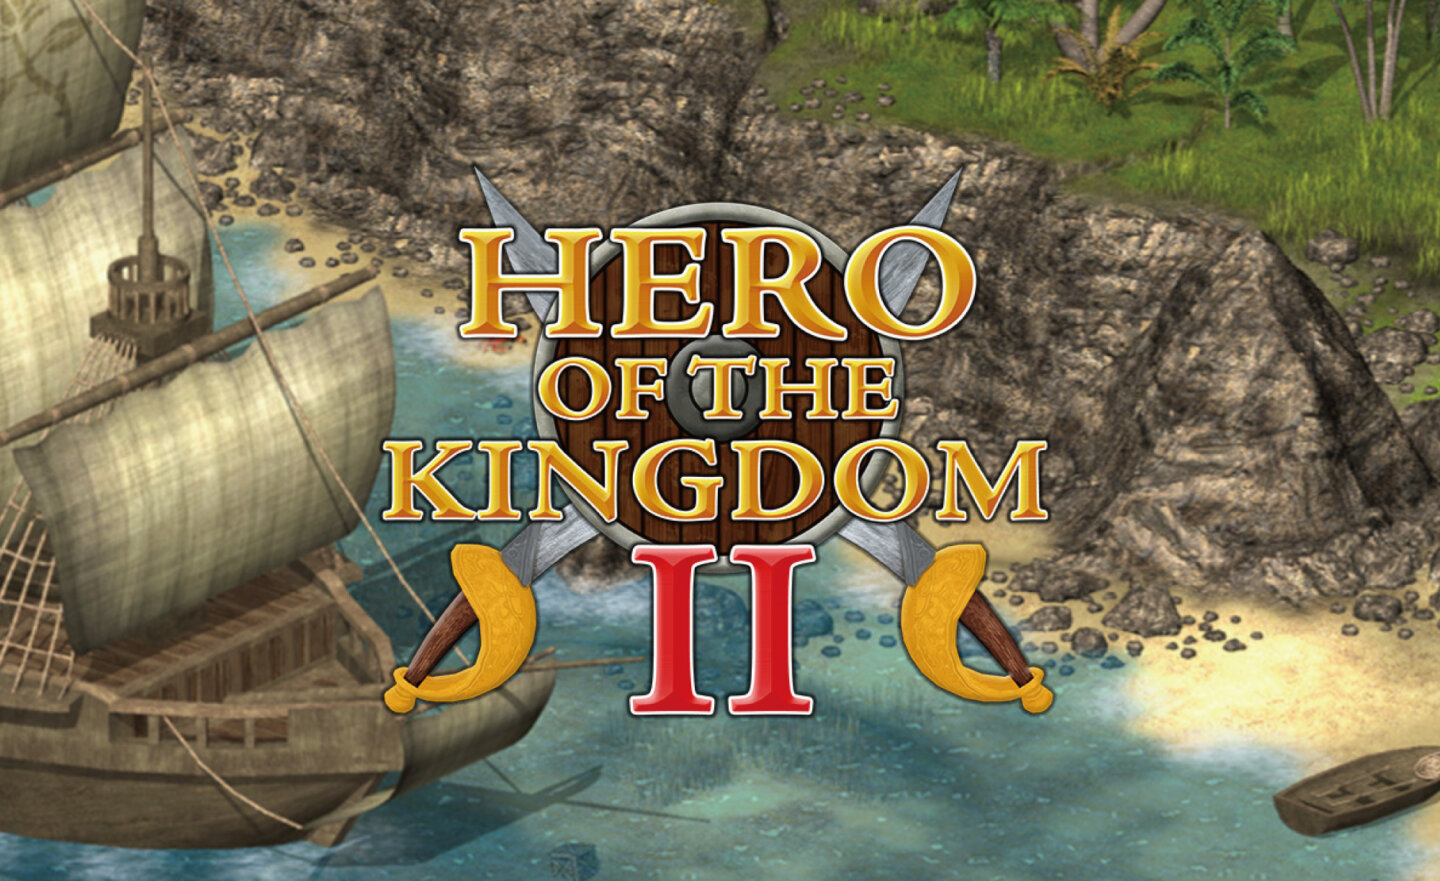 【限時免費】GOG 平台放送休閒冒險遊戲《Hero of the Kingdom II》，領取時間至 8 月 31 日晚上 9:00 截止